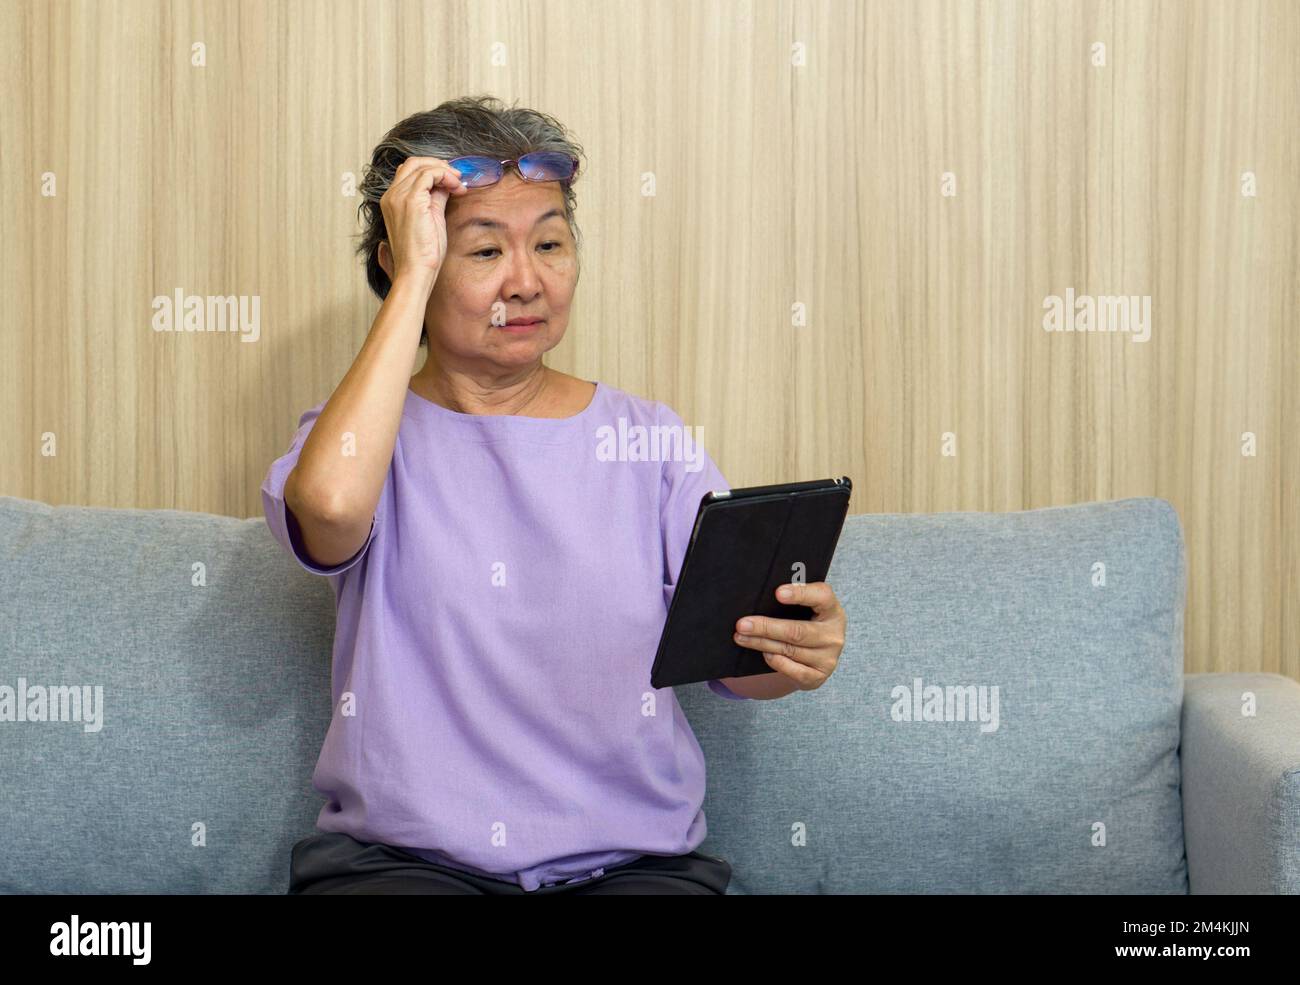 Ältere asiatische Rentner mit Brille sitzen auf dem Sofa und beobachten den Tablet-Computer. Mit Presbyopie-Syndrom kann sie sich nicht auf nahe gelegene Objekte konzentrieren. Stockfoto